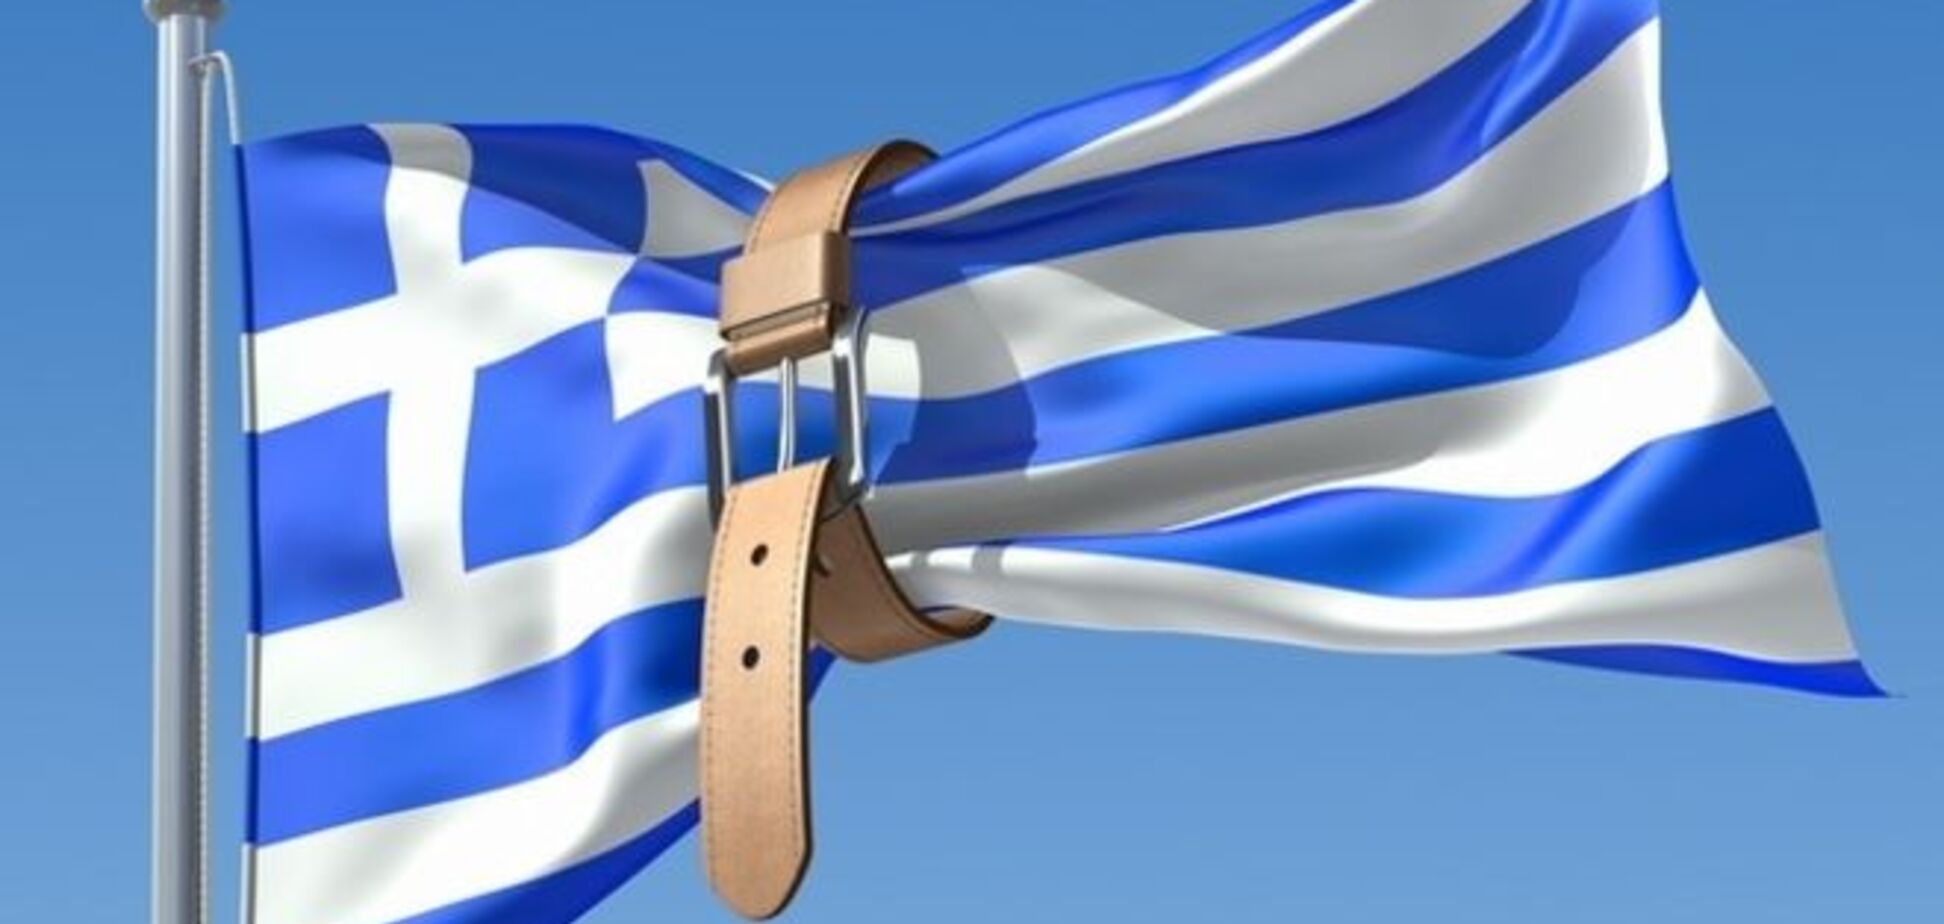  Нет бумаги: греческие газеты сократили количество полос